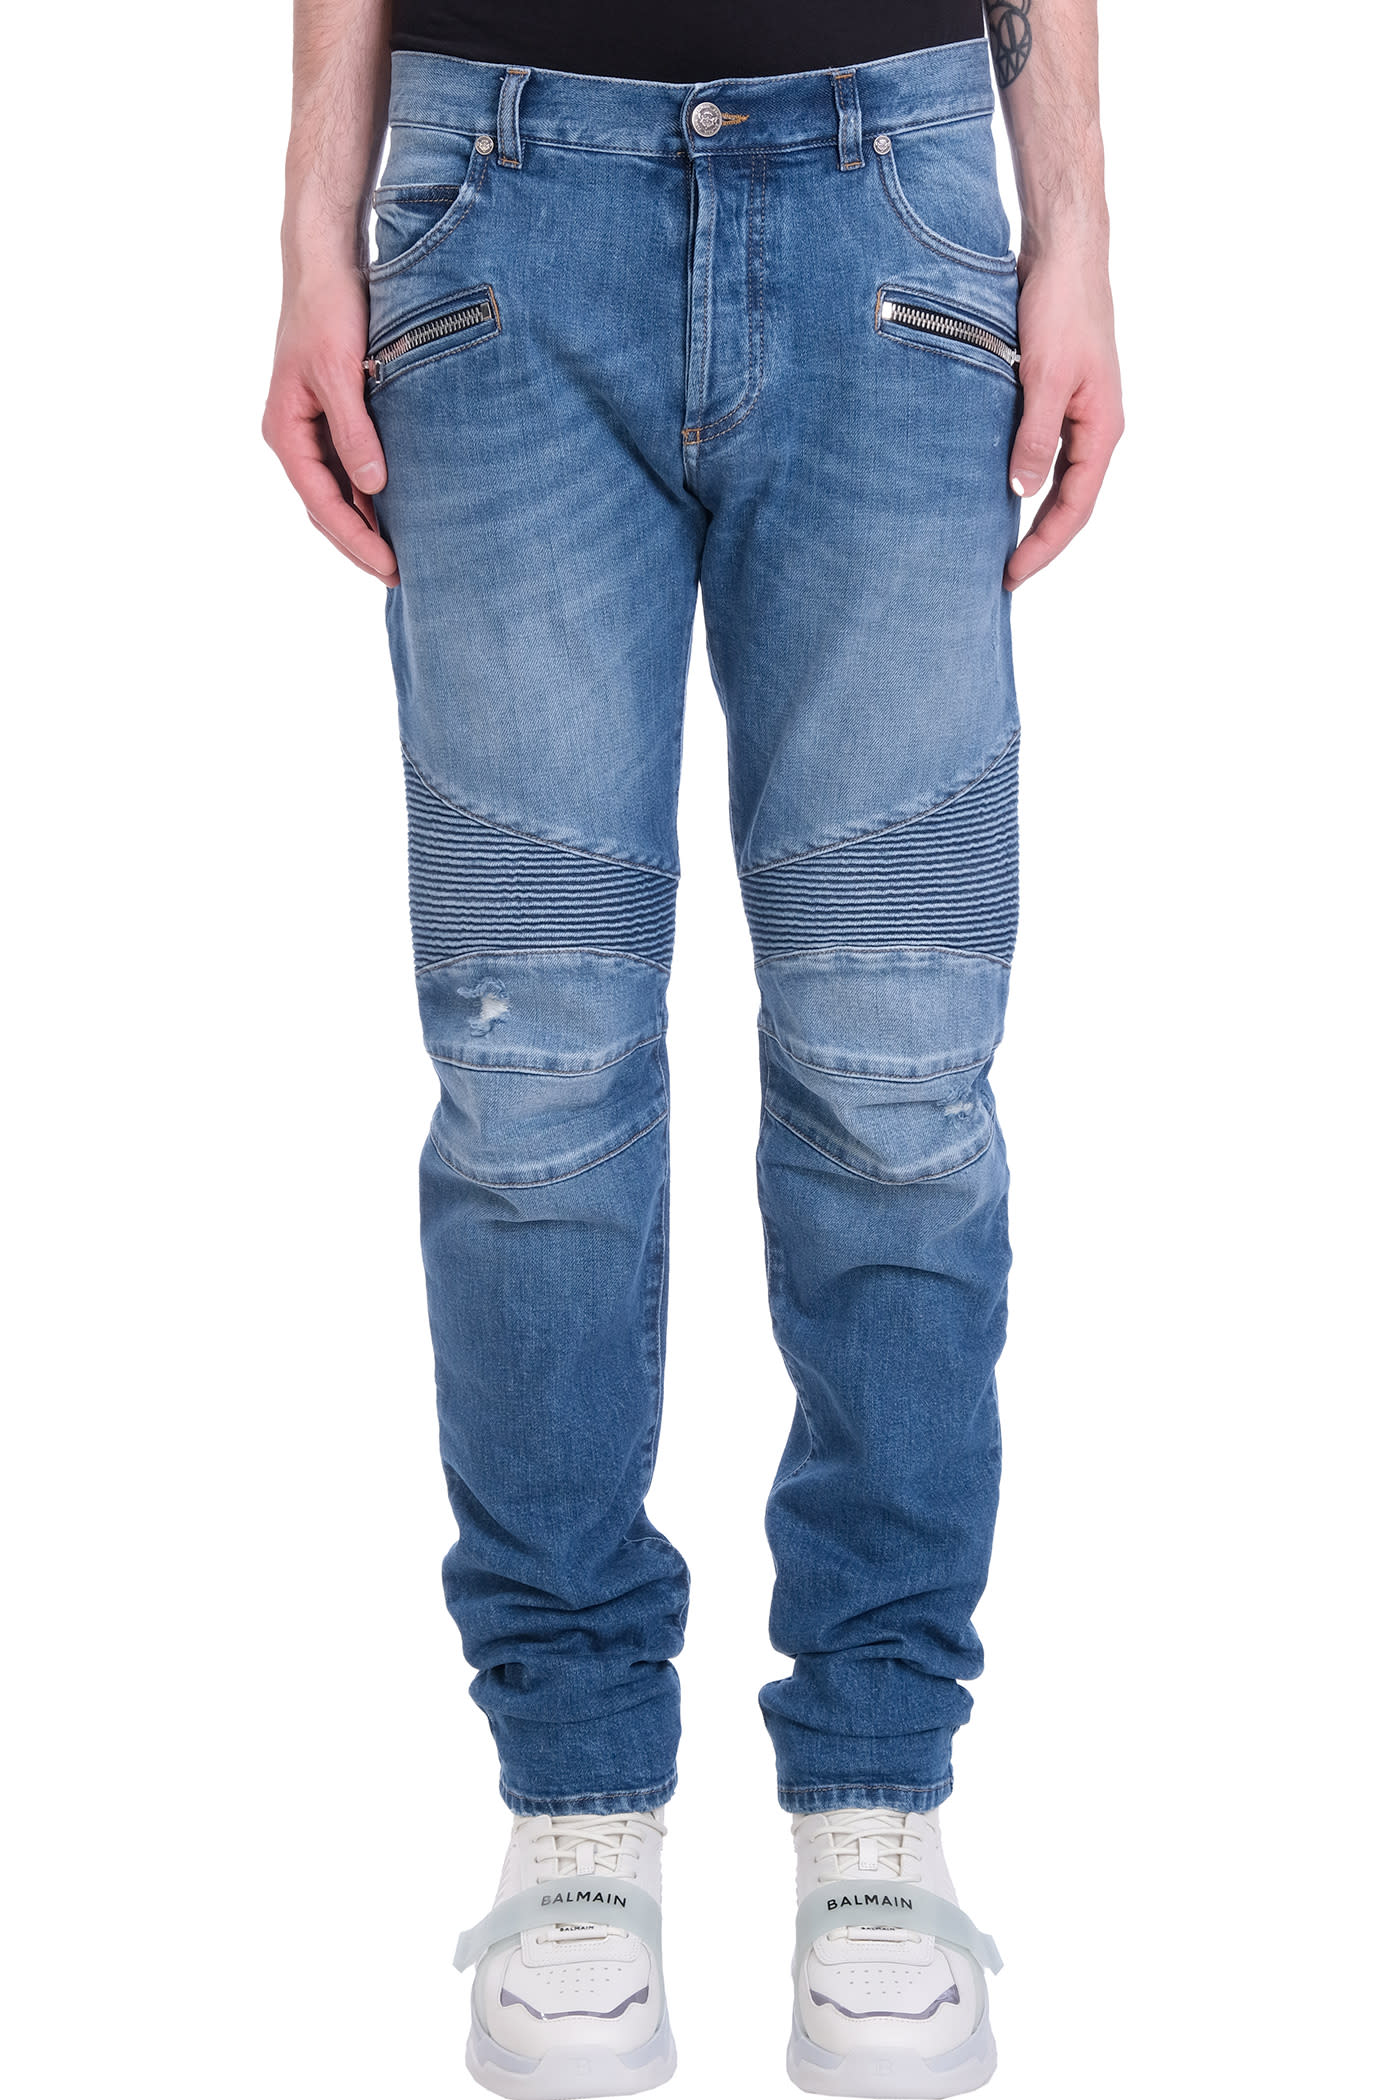 Balmain Jeans In Blue Wool